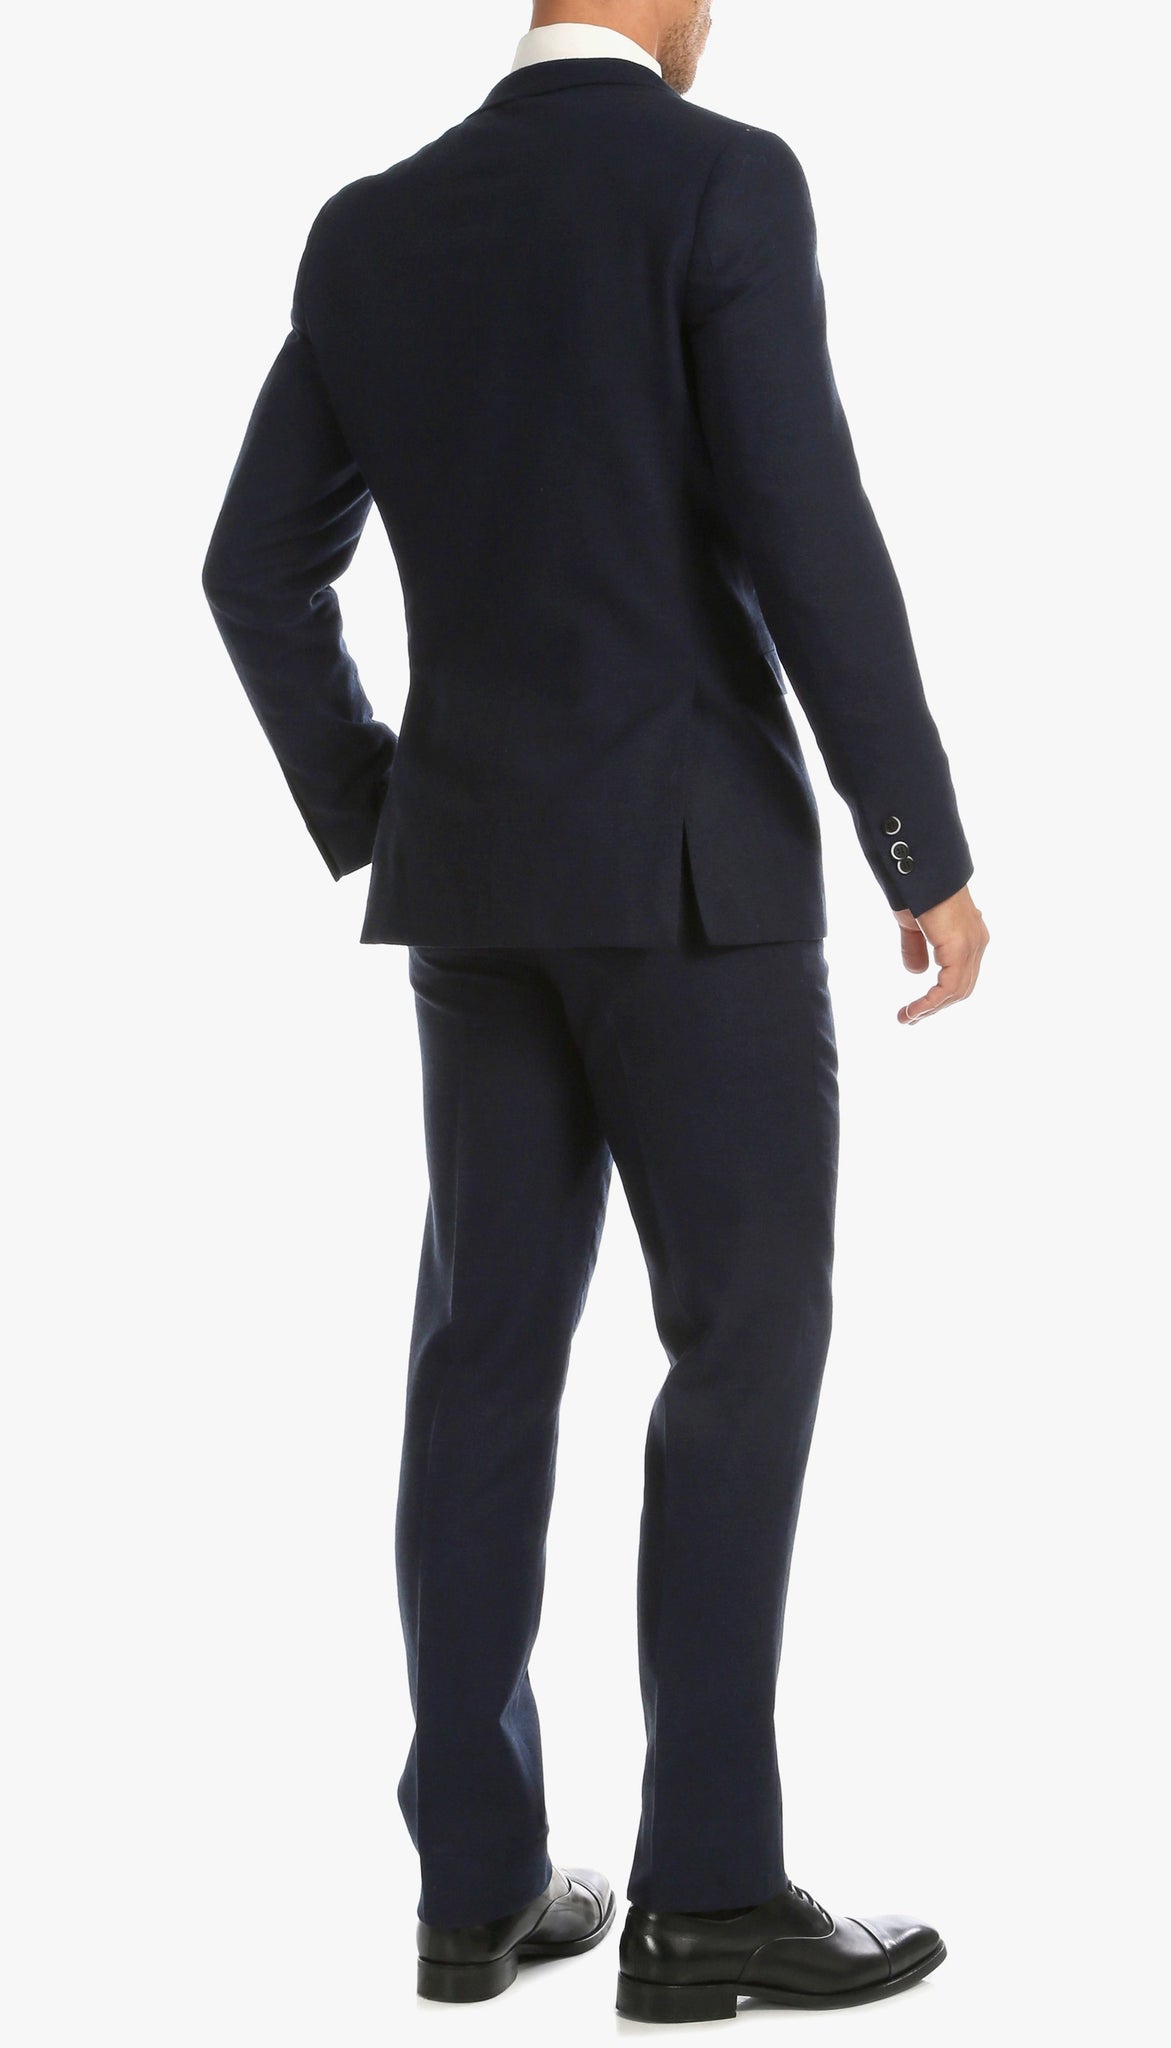 Bradford Navy Slim Fit Tweed 3pc Suit